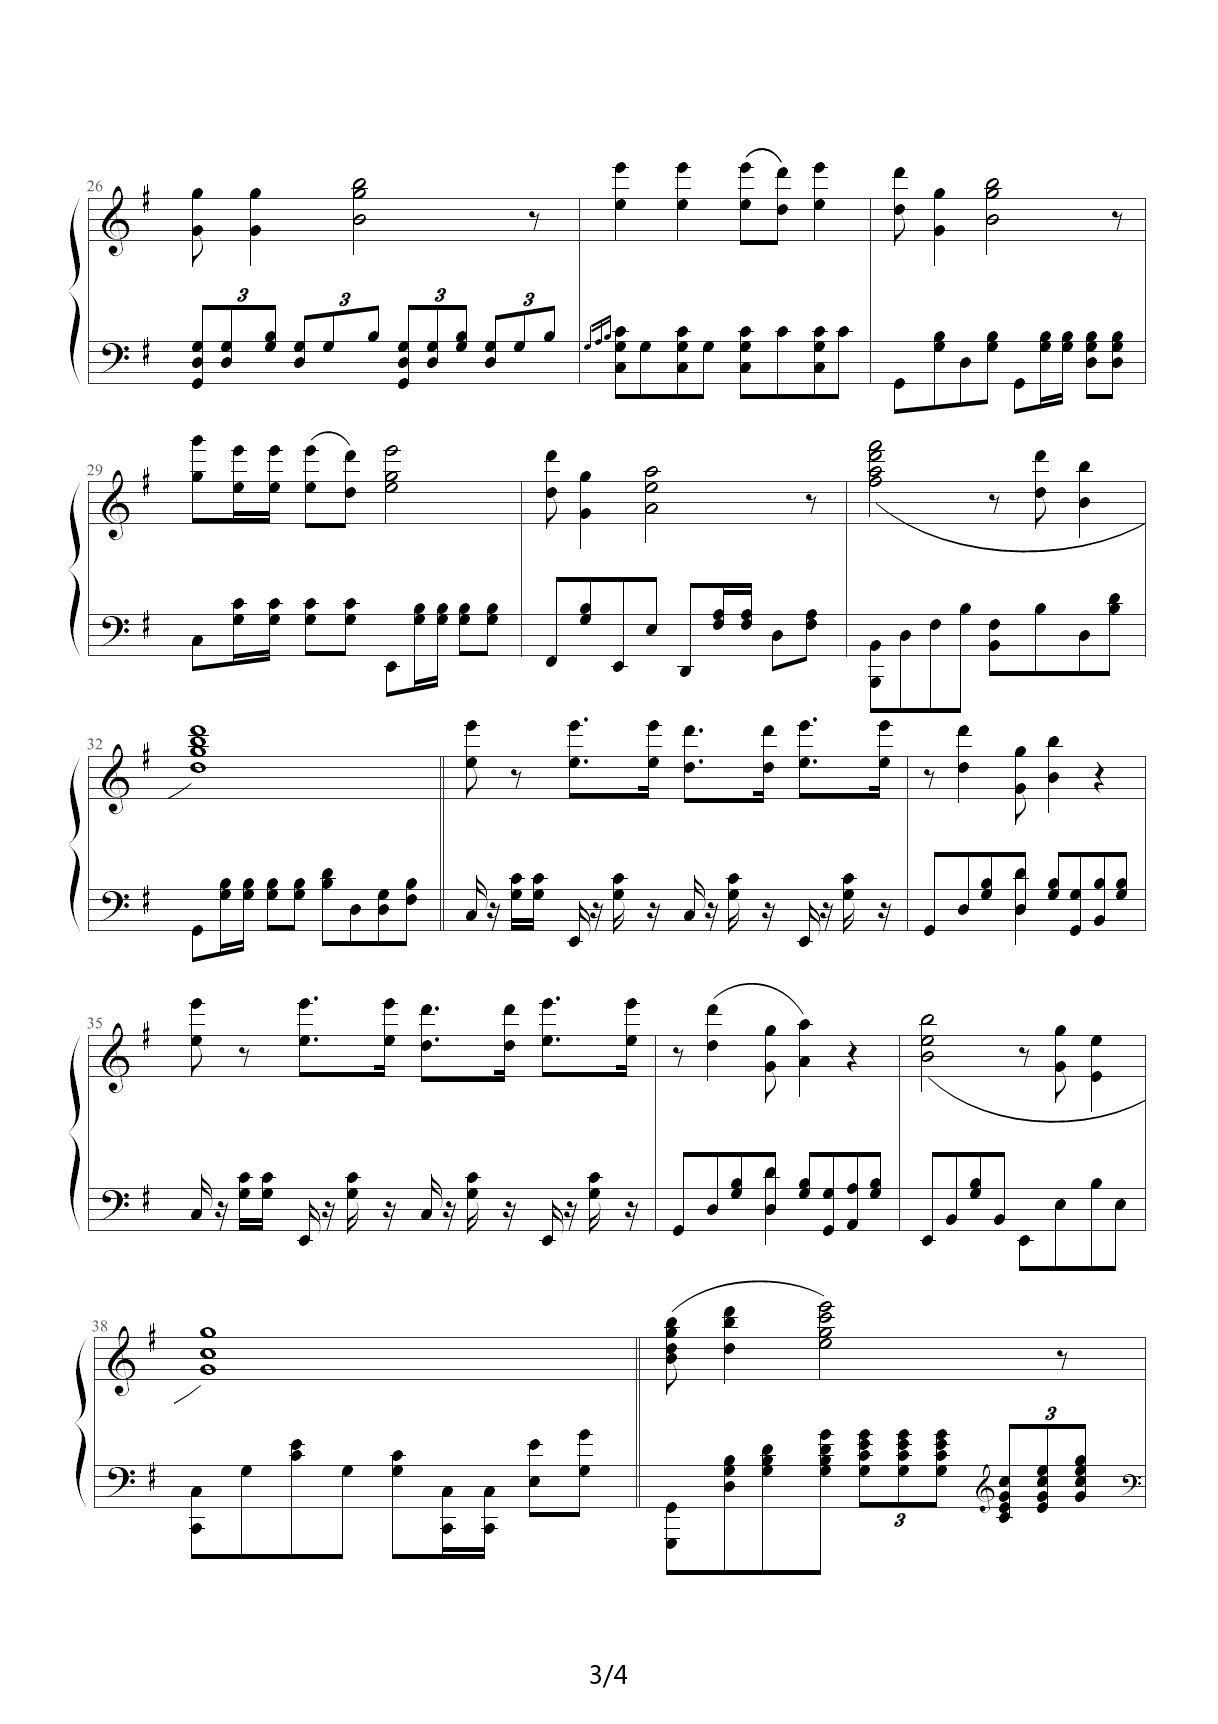 简易版《葫芦娃》钢琴谱 - 儿歌C调简谱版 - 入门完整版曲谱 - 钢琴简谱